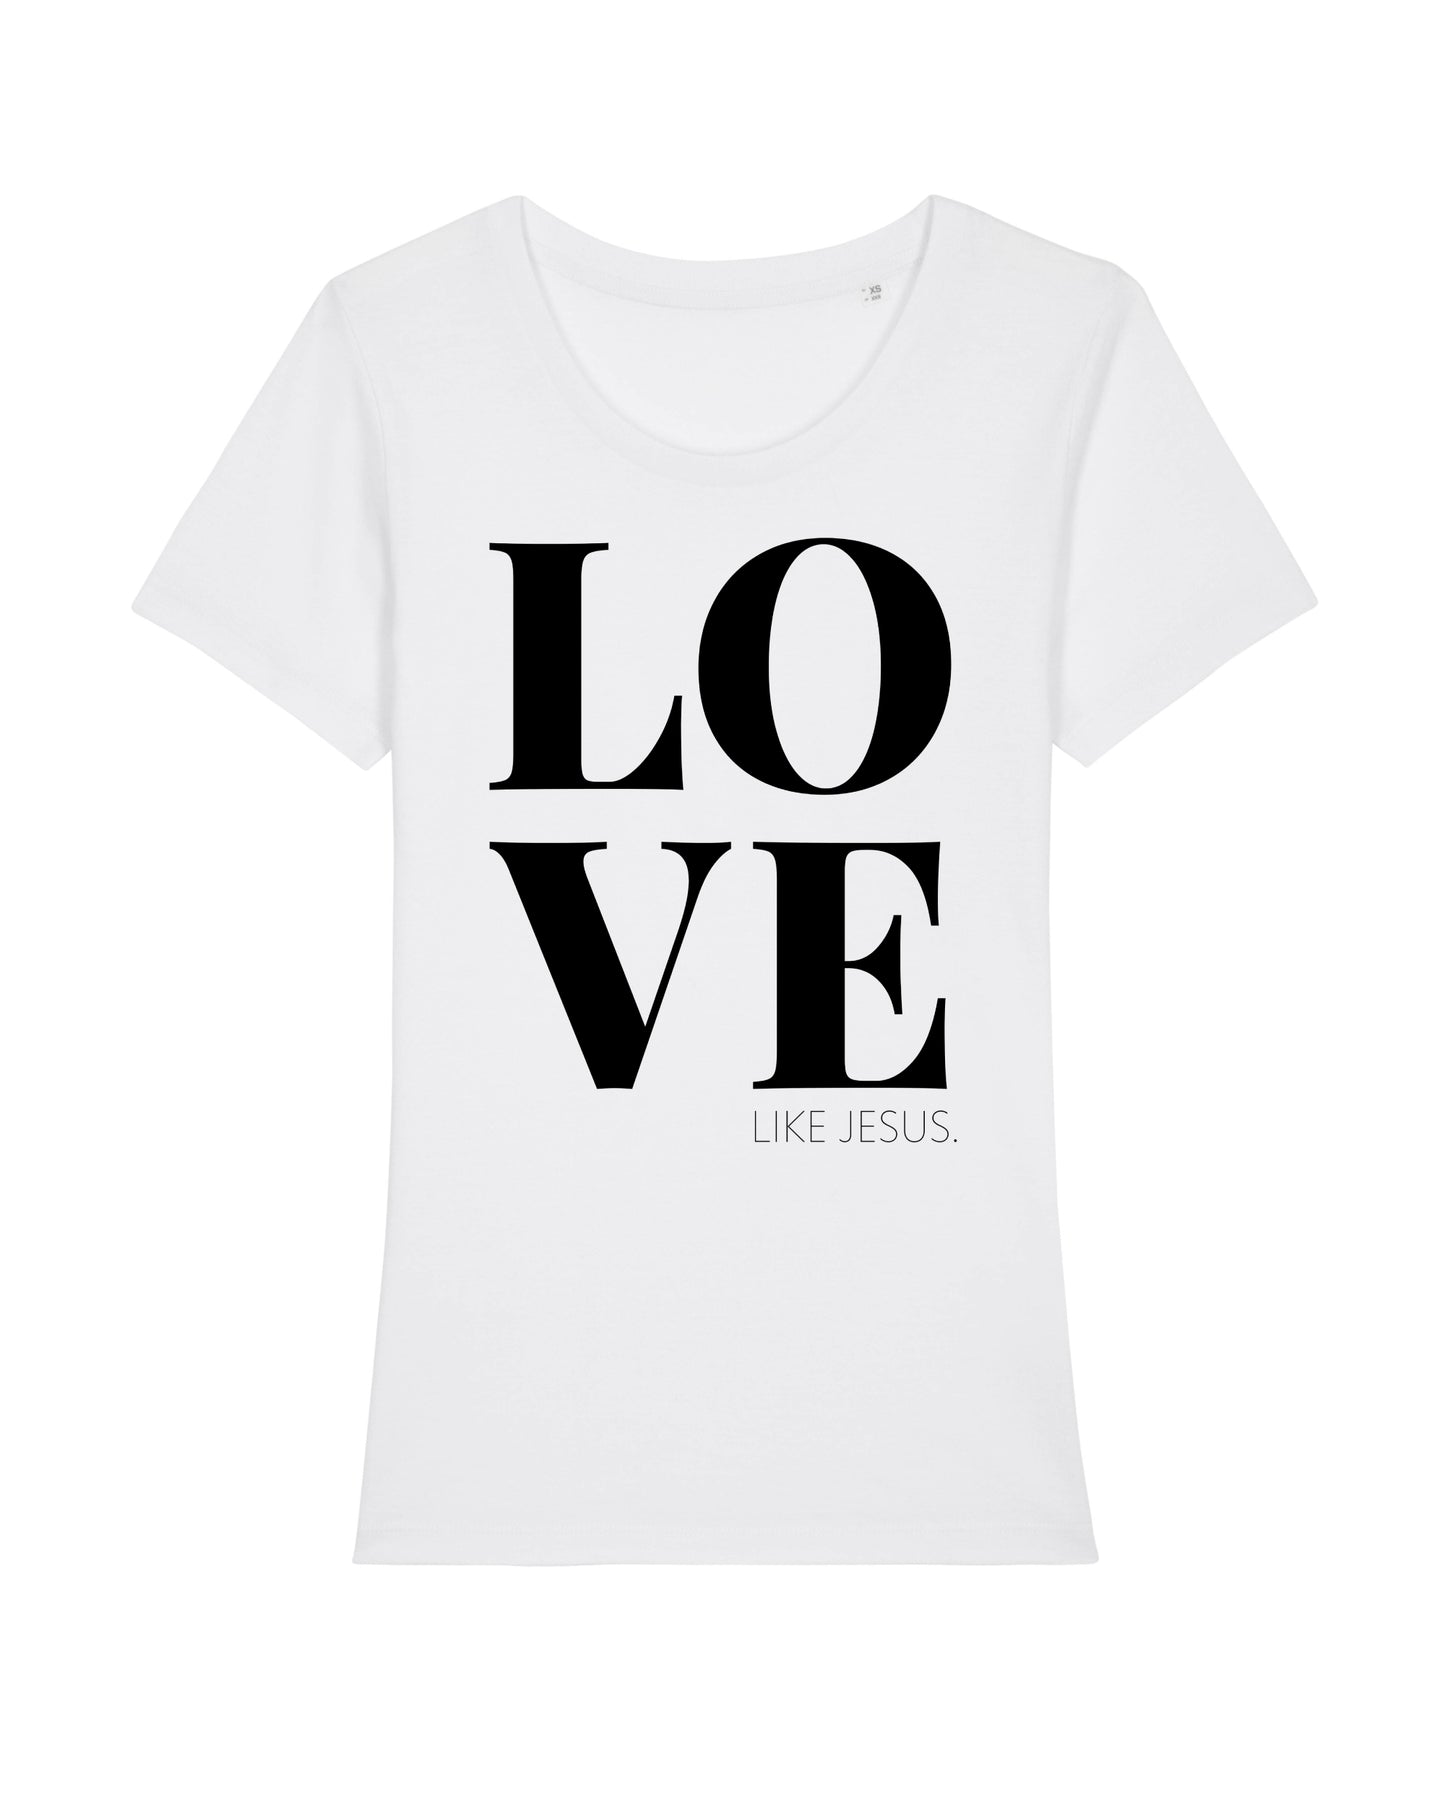 Damen-T-Shirt in weiß mit schwarzem LOVE LIKE JESUS Druck